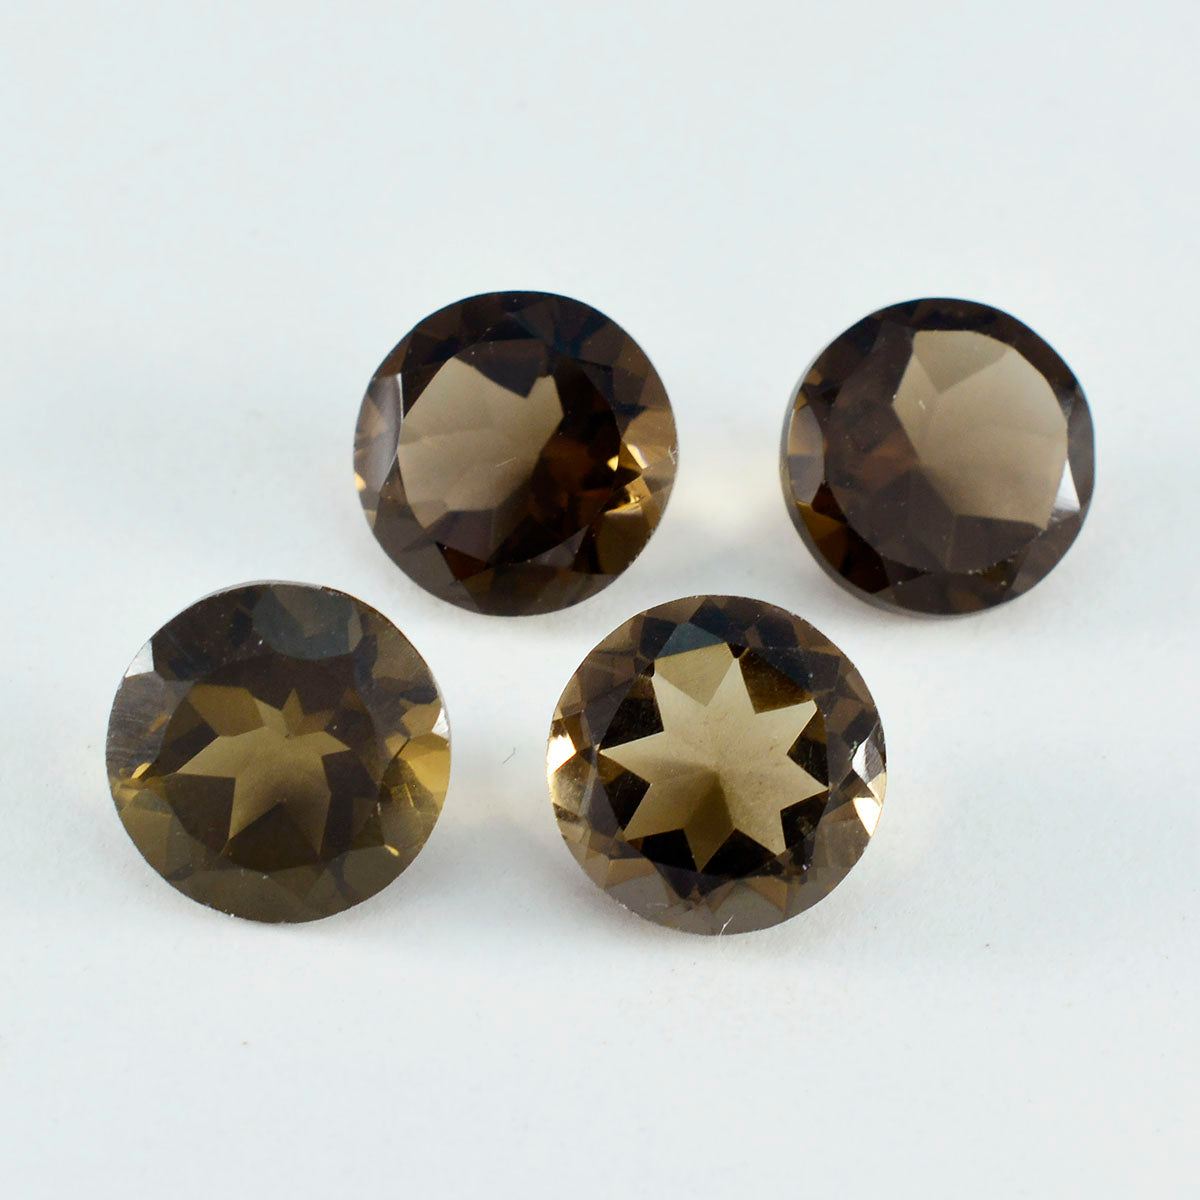 Riyogems 1pc quartz fumé brun naturel à facettes 14x14mm forme ronde jolie qualité pierre précieuse en vrac